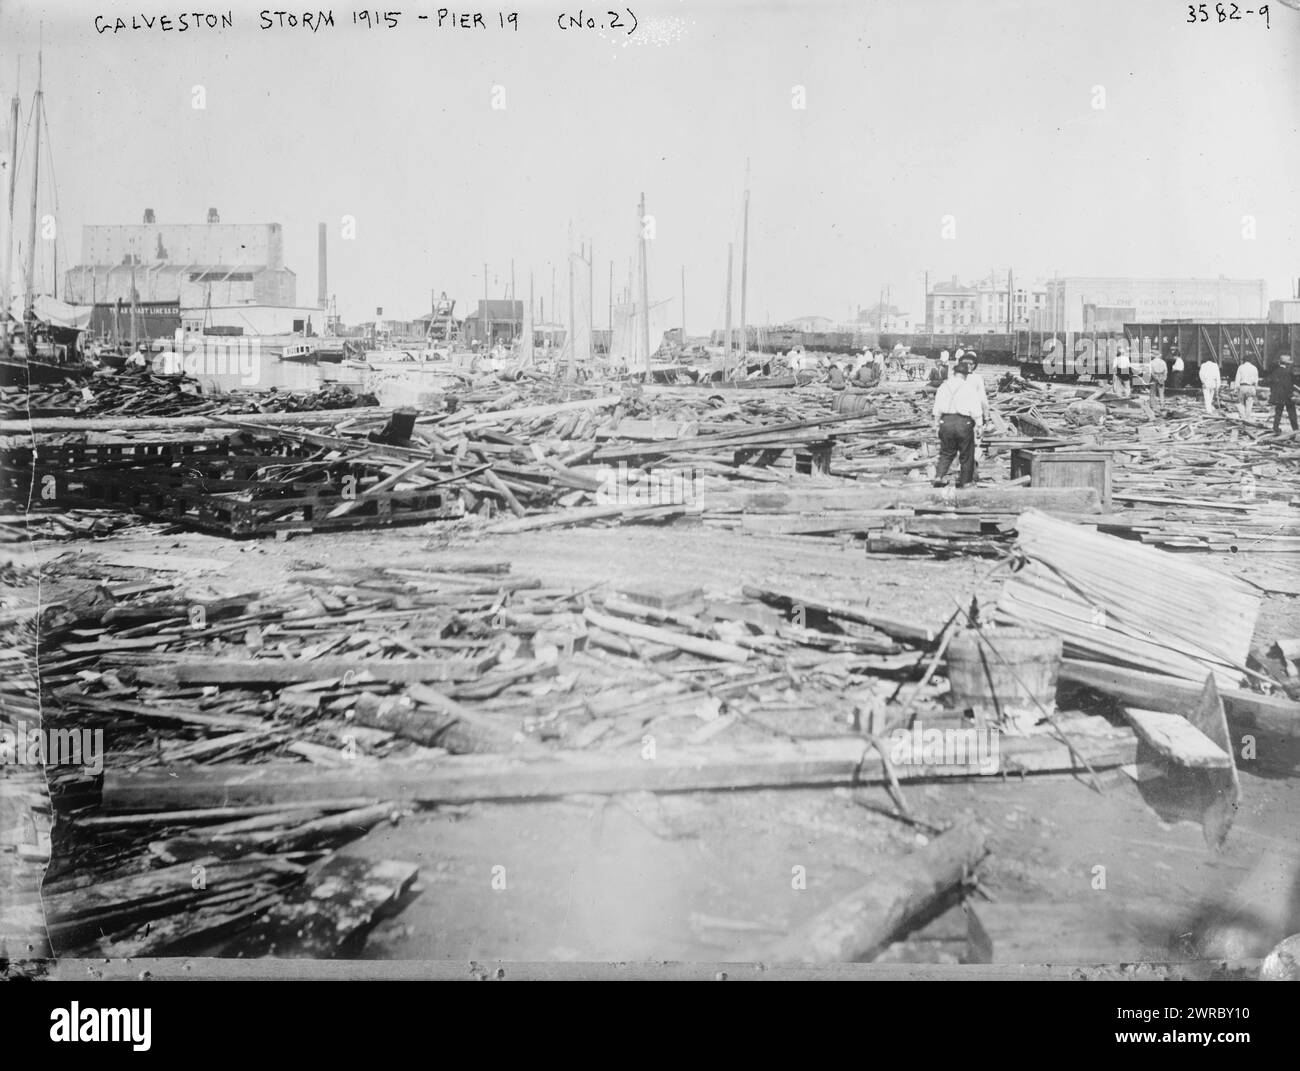 Tempête de Galveston, 1915, jetée 19 (no 2), photographie montrant les conséquences de l'ouragan de Galveston de 1915., 1915., négatifs en verre, 1 négatif : verre Banque D'Images